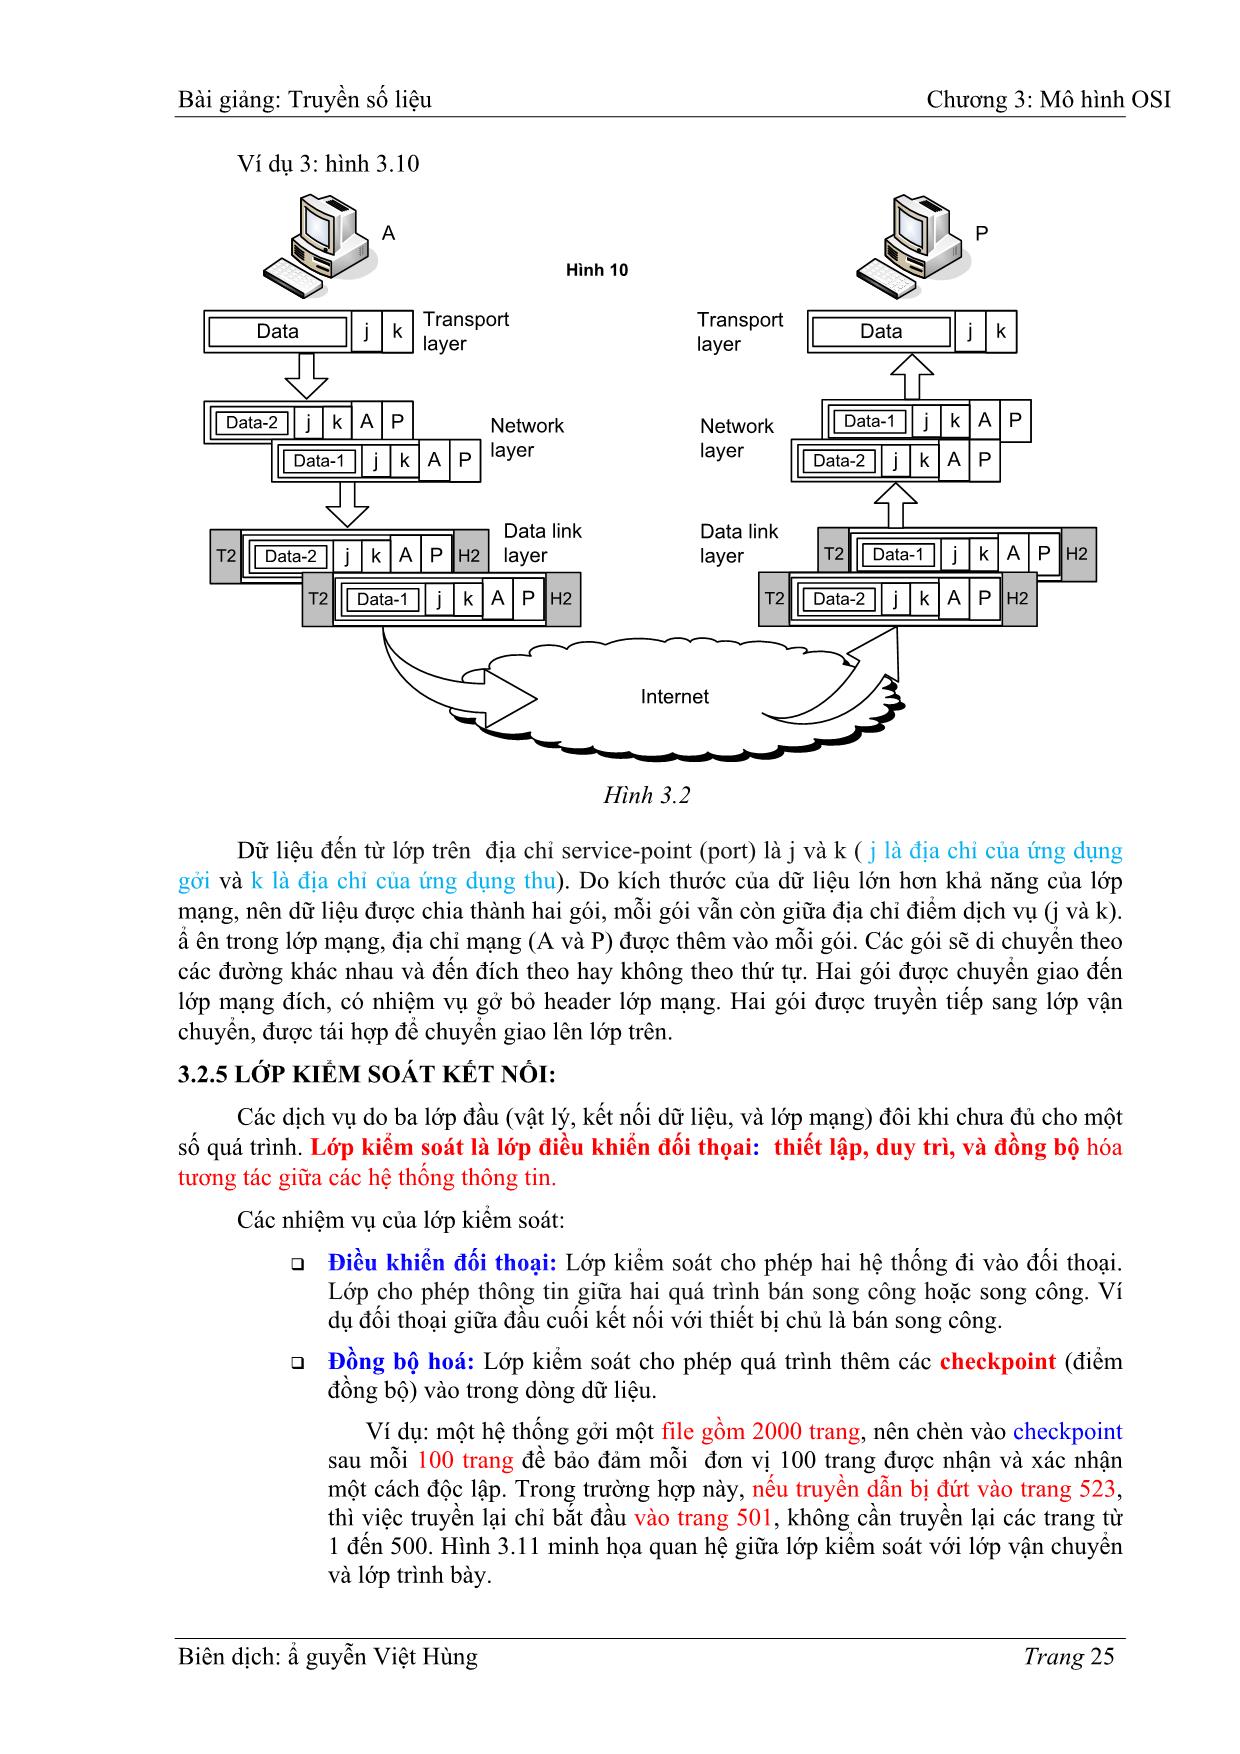 Bài giảng Truyền số liệu - Chương 3: Mô hình OIS - Nguyễn Việt Hùng trang 9